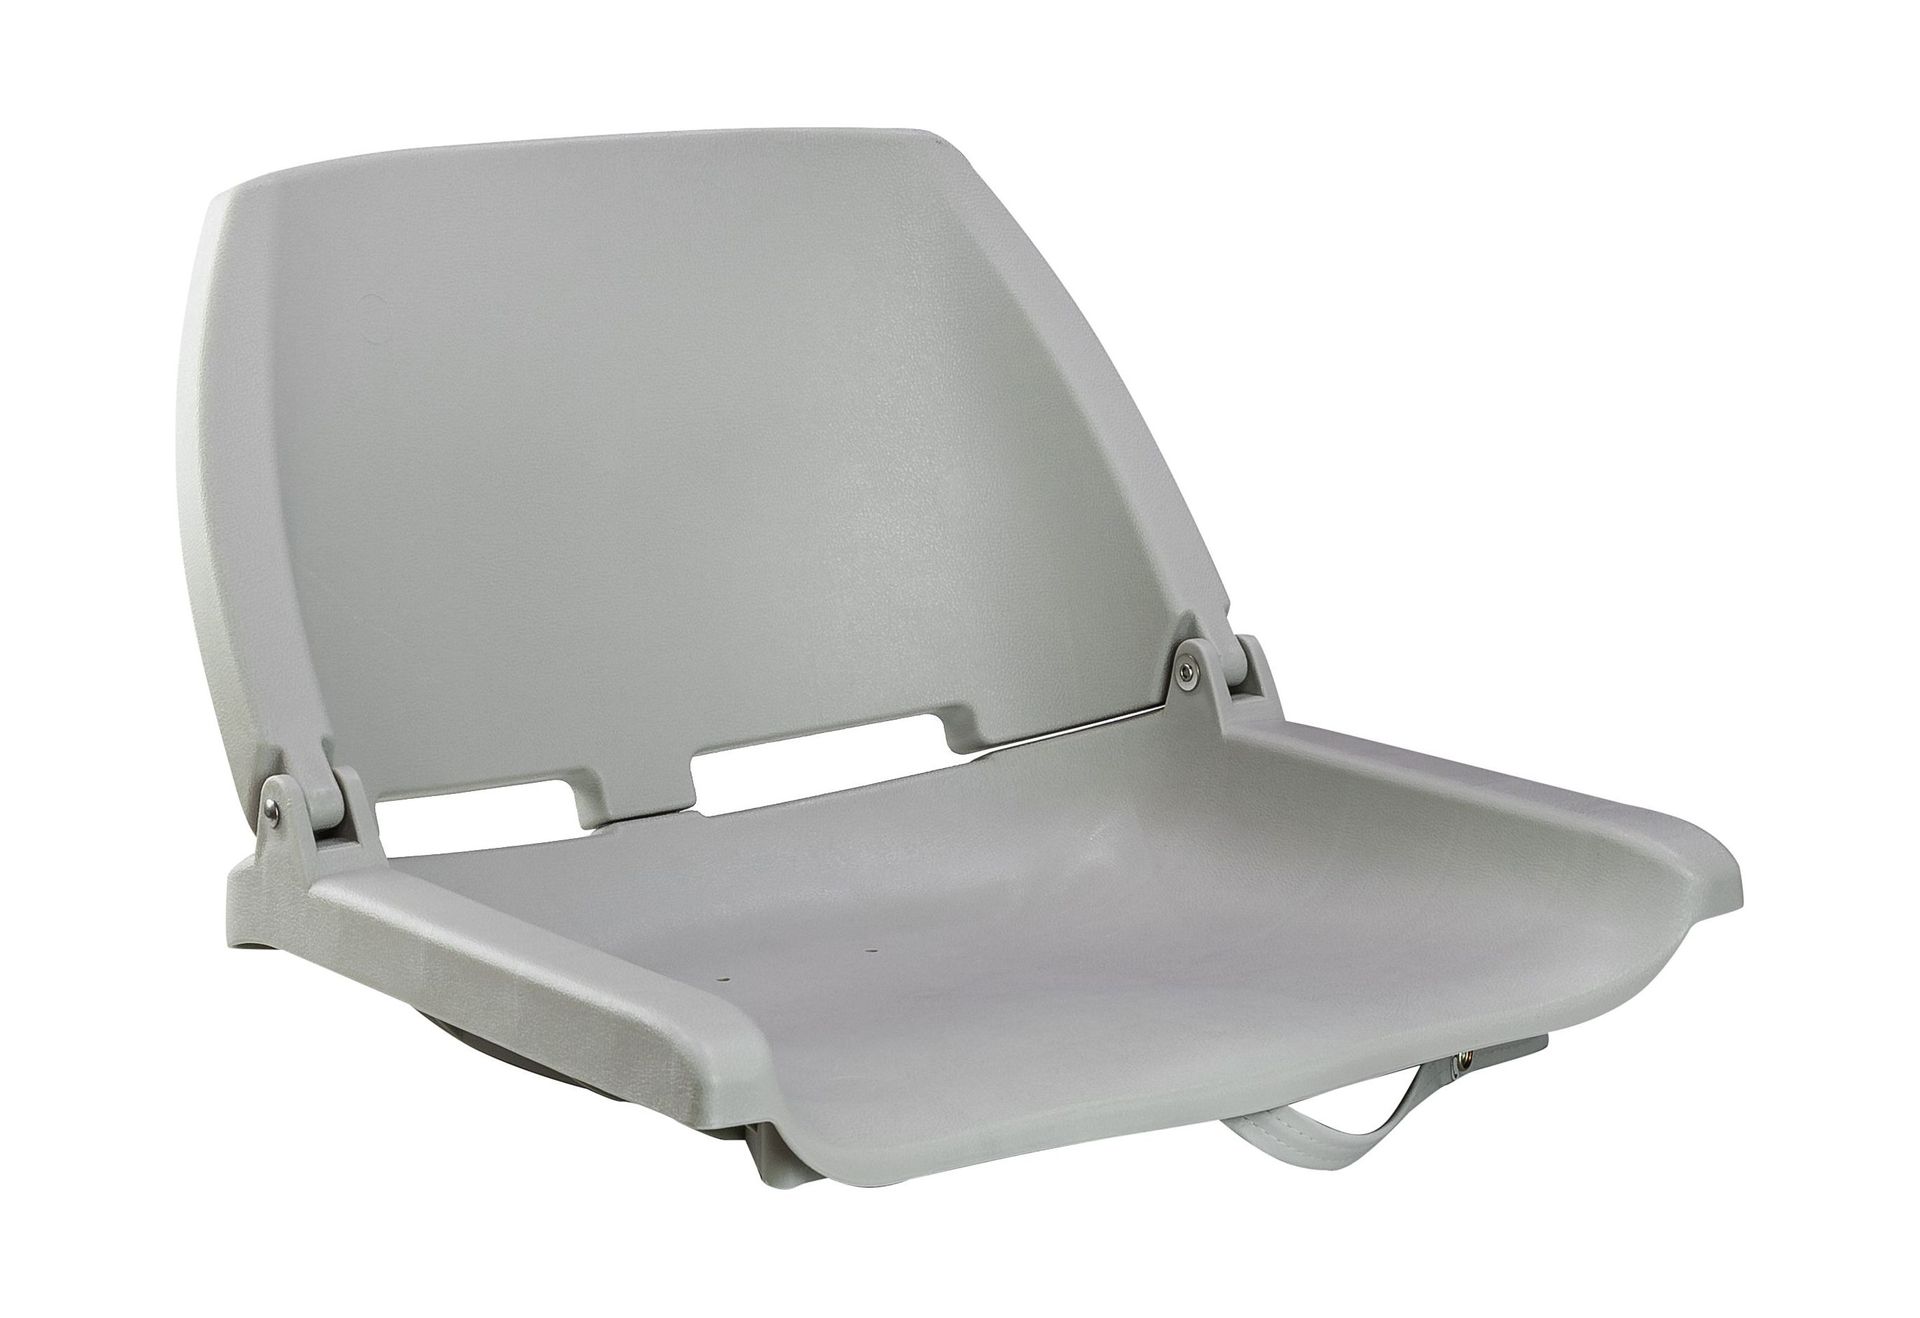 Кресло складное, пластик, цвет серый, Marine Rocket 75110G-MR крыло щиток универсальное author x mudy пластик переднее на раму быстросъемное черное 8 16150025